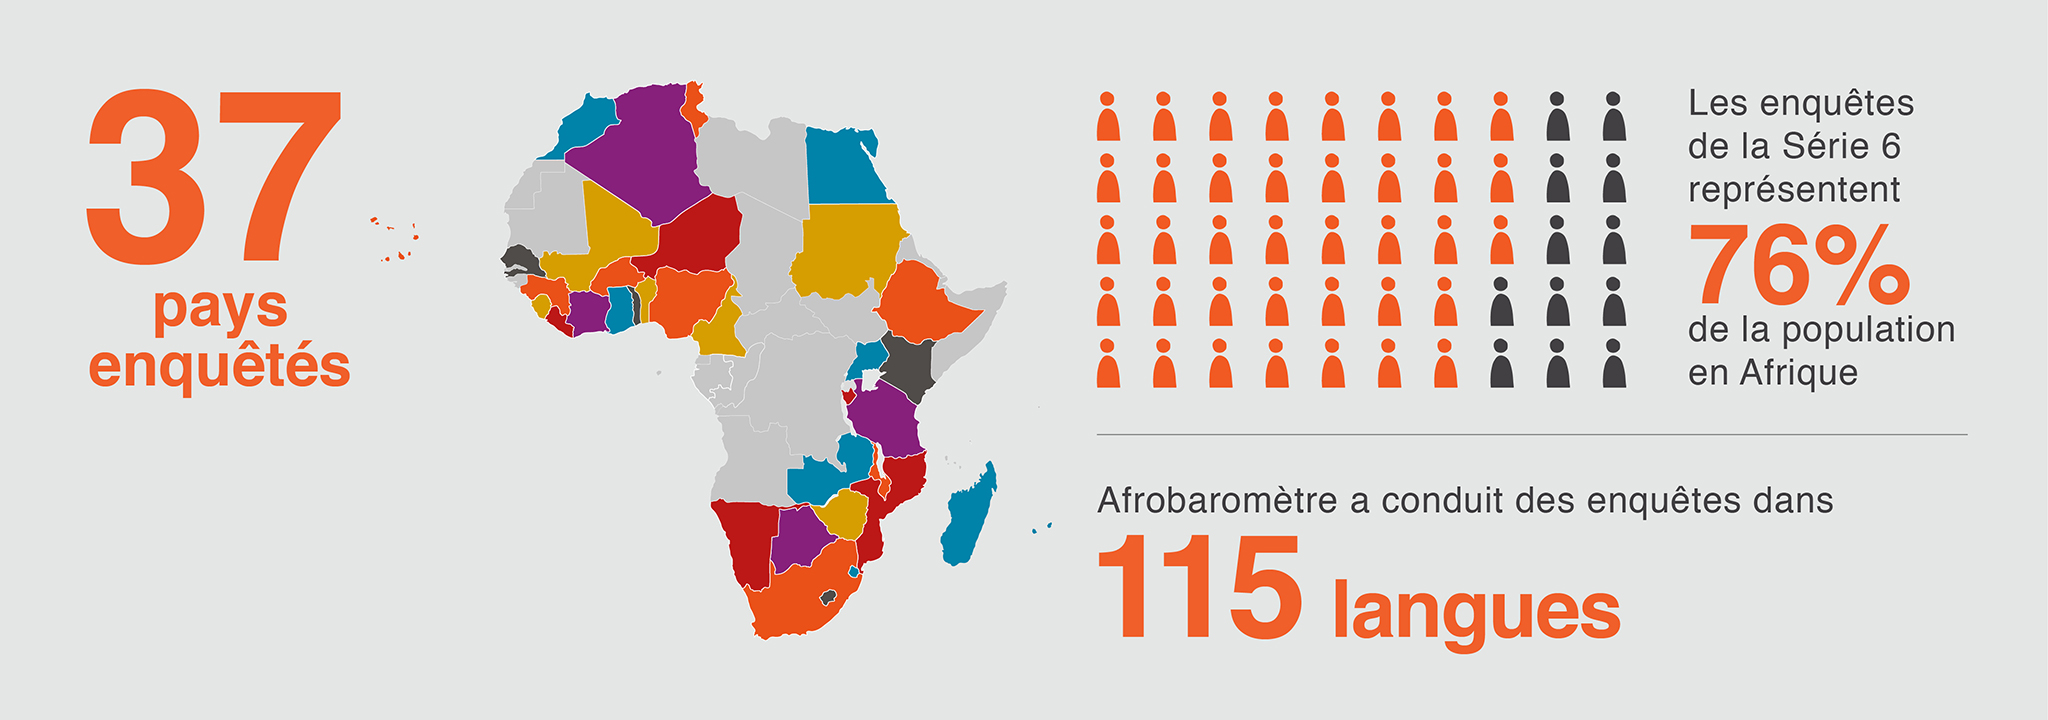 Afrobaromètre est un réseau de recherche qui mène des enquêtes d'opinions dans plus de 30 pays en Afrique.